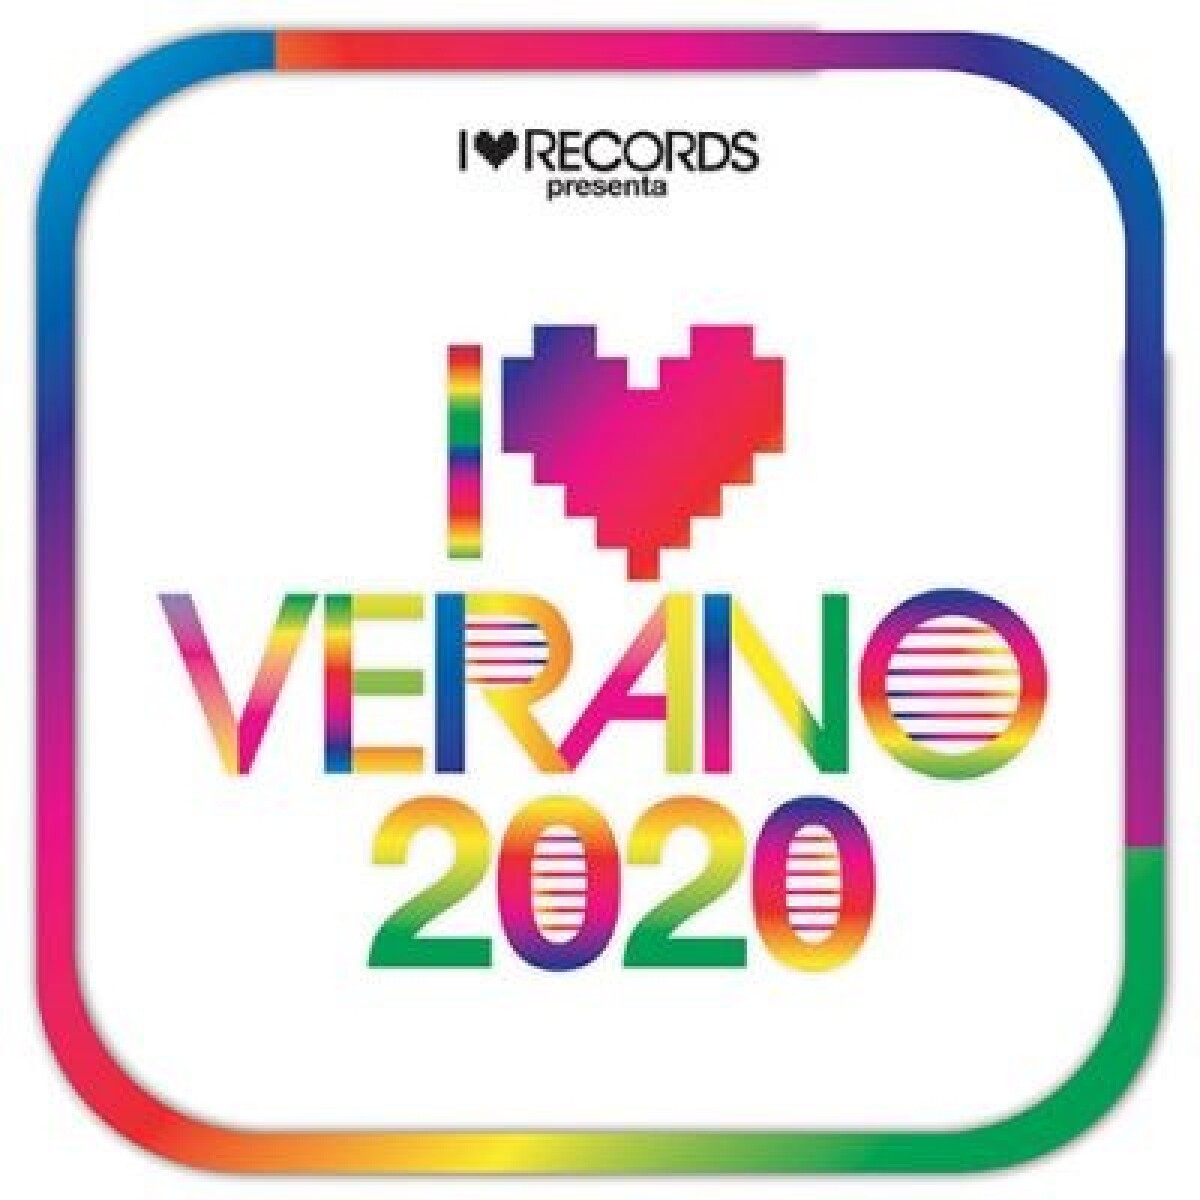 (l) Varios - I Love Verano 2020 - Cd 